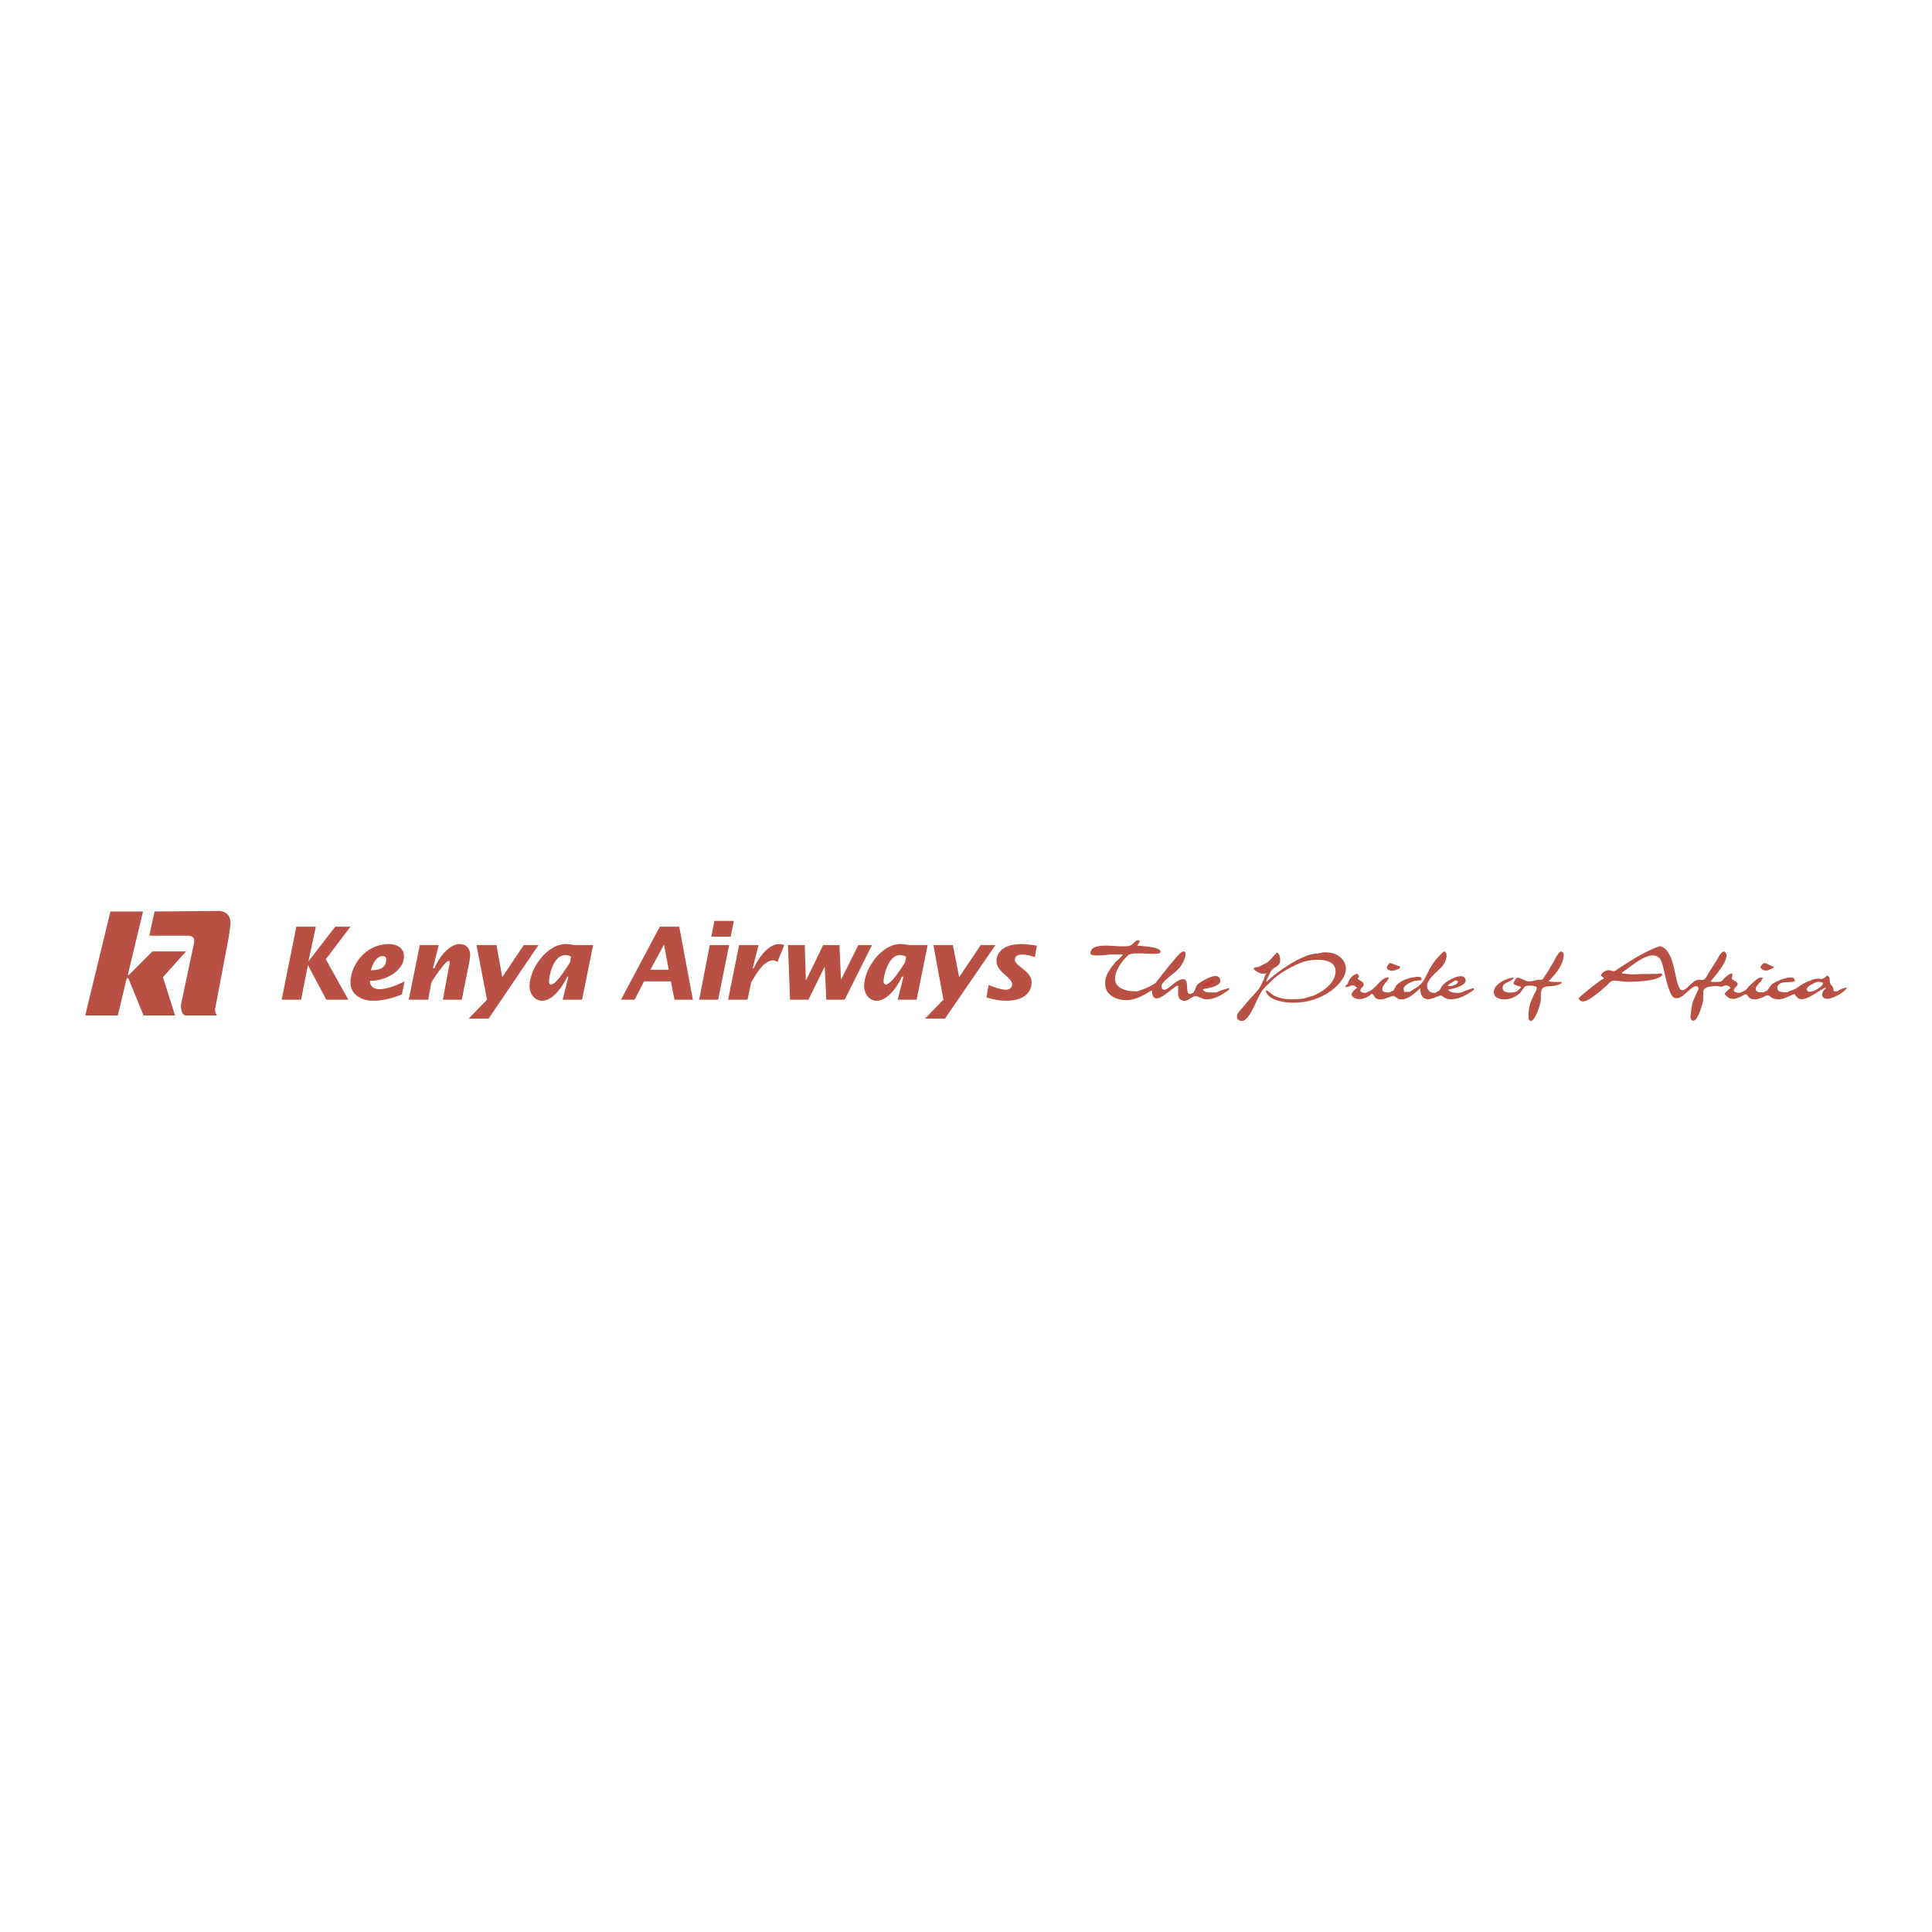 Kenya Airways Cargo tracking | Track Kenya Airways Cargo packages | Parcel Arrive